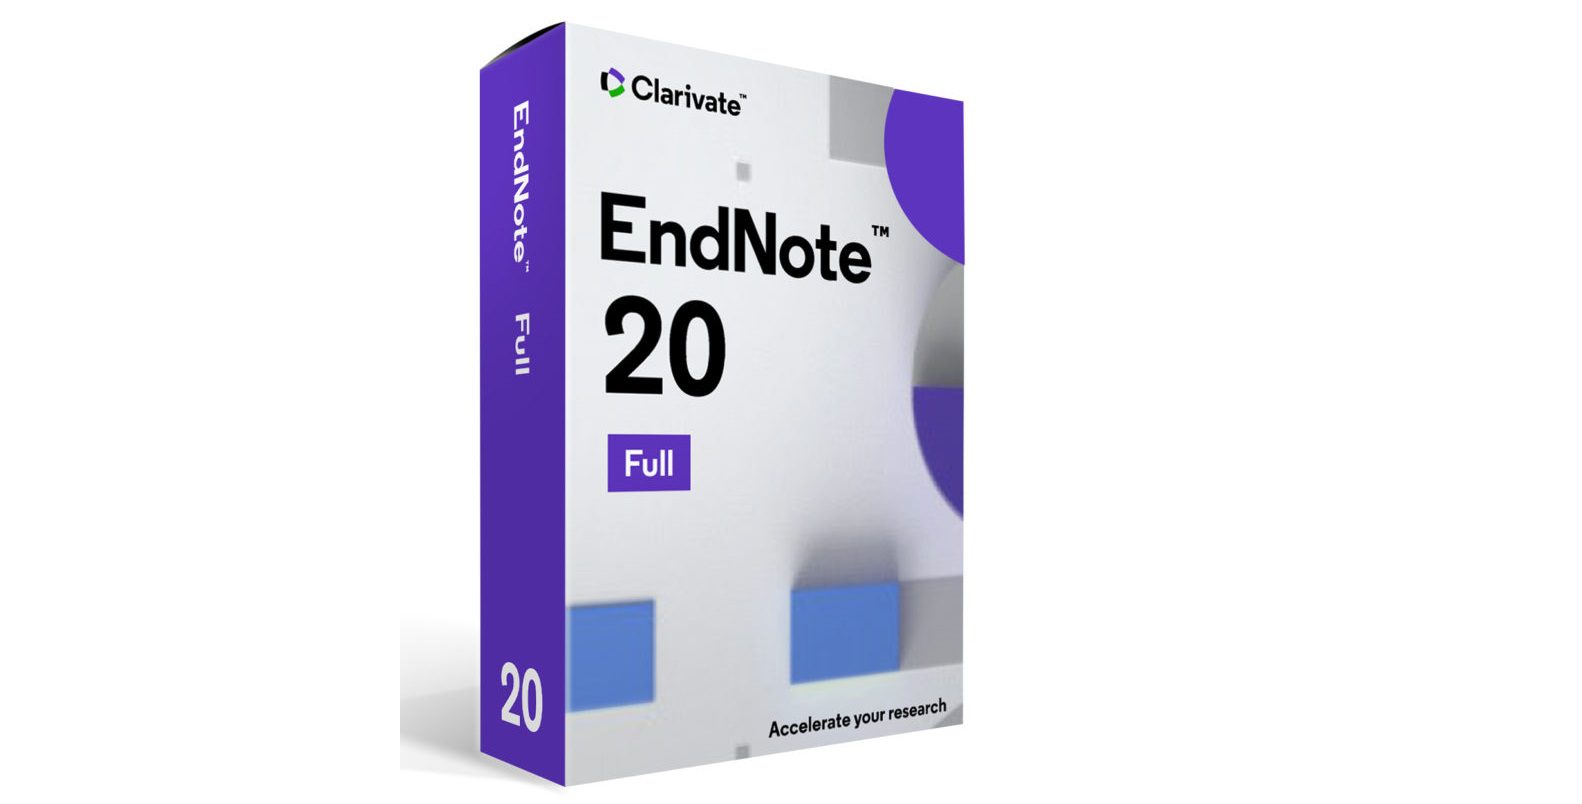 Endnote software download samsung download center